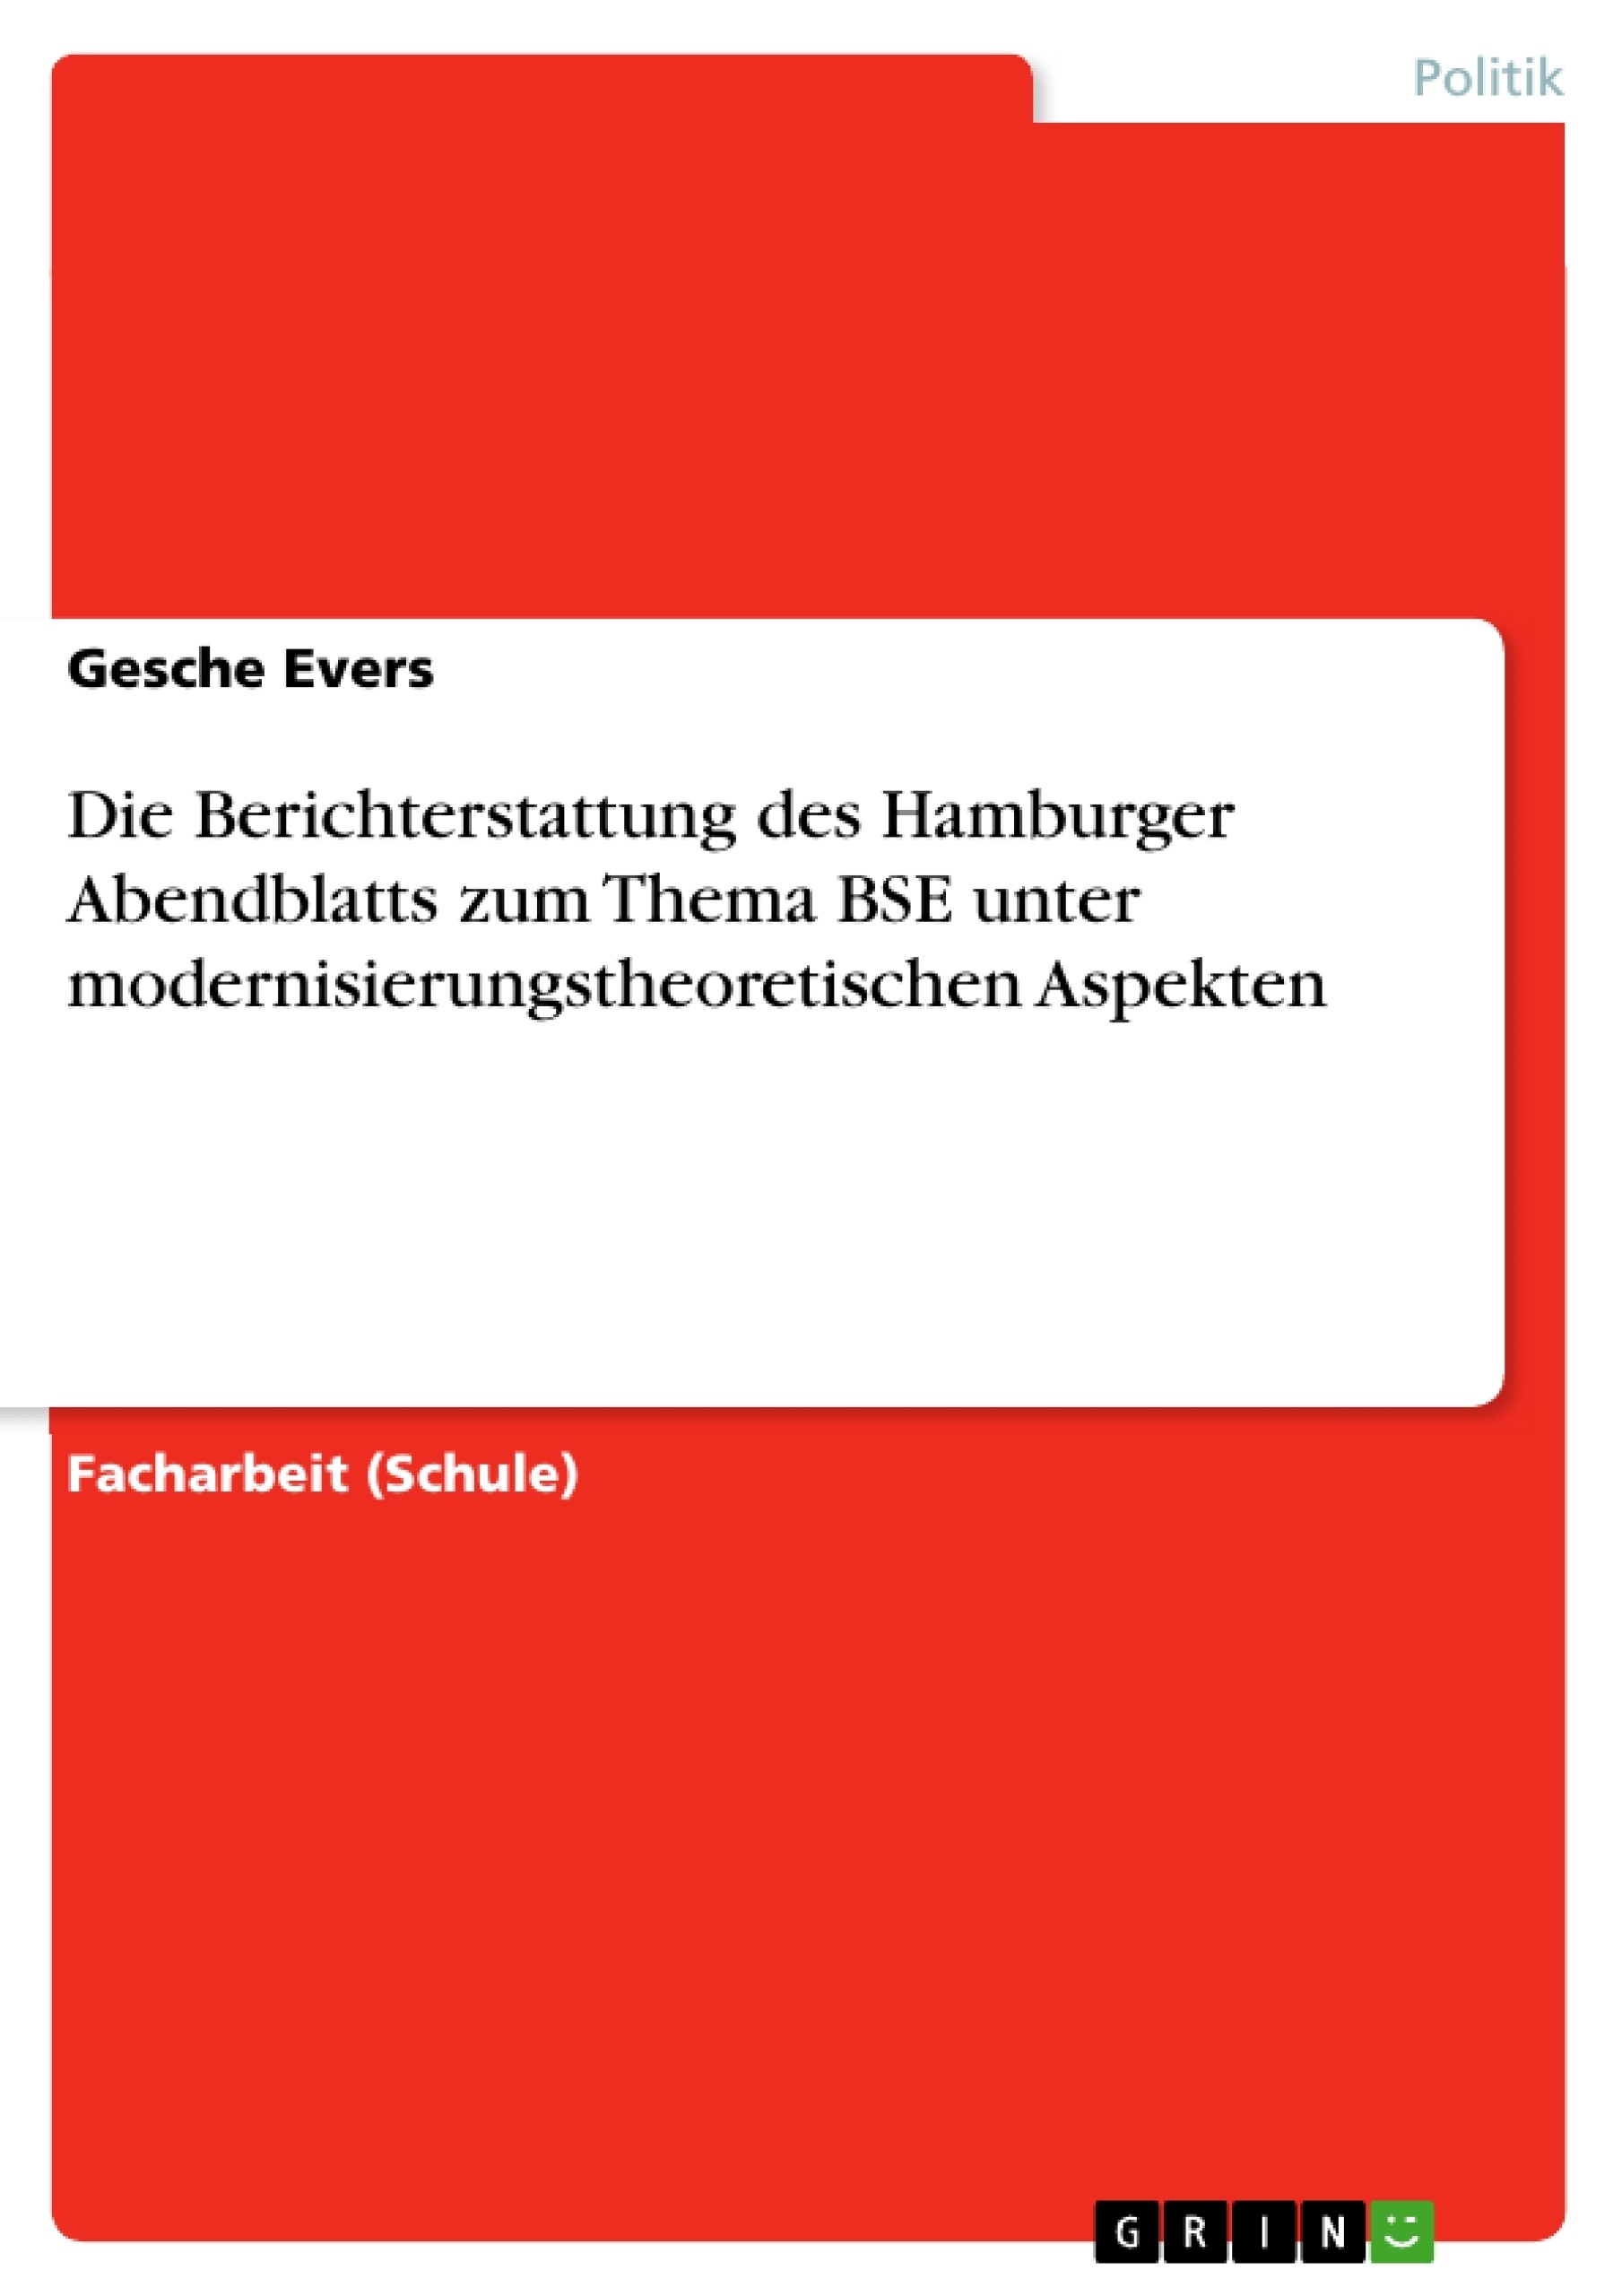 Título: Die Berichterstattung des Hamburger Abendblatts zum Thema BSE unter modernisierungstheoretischen Aspekten